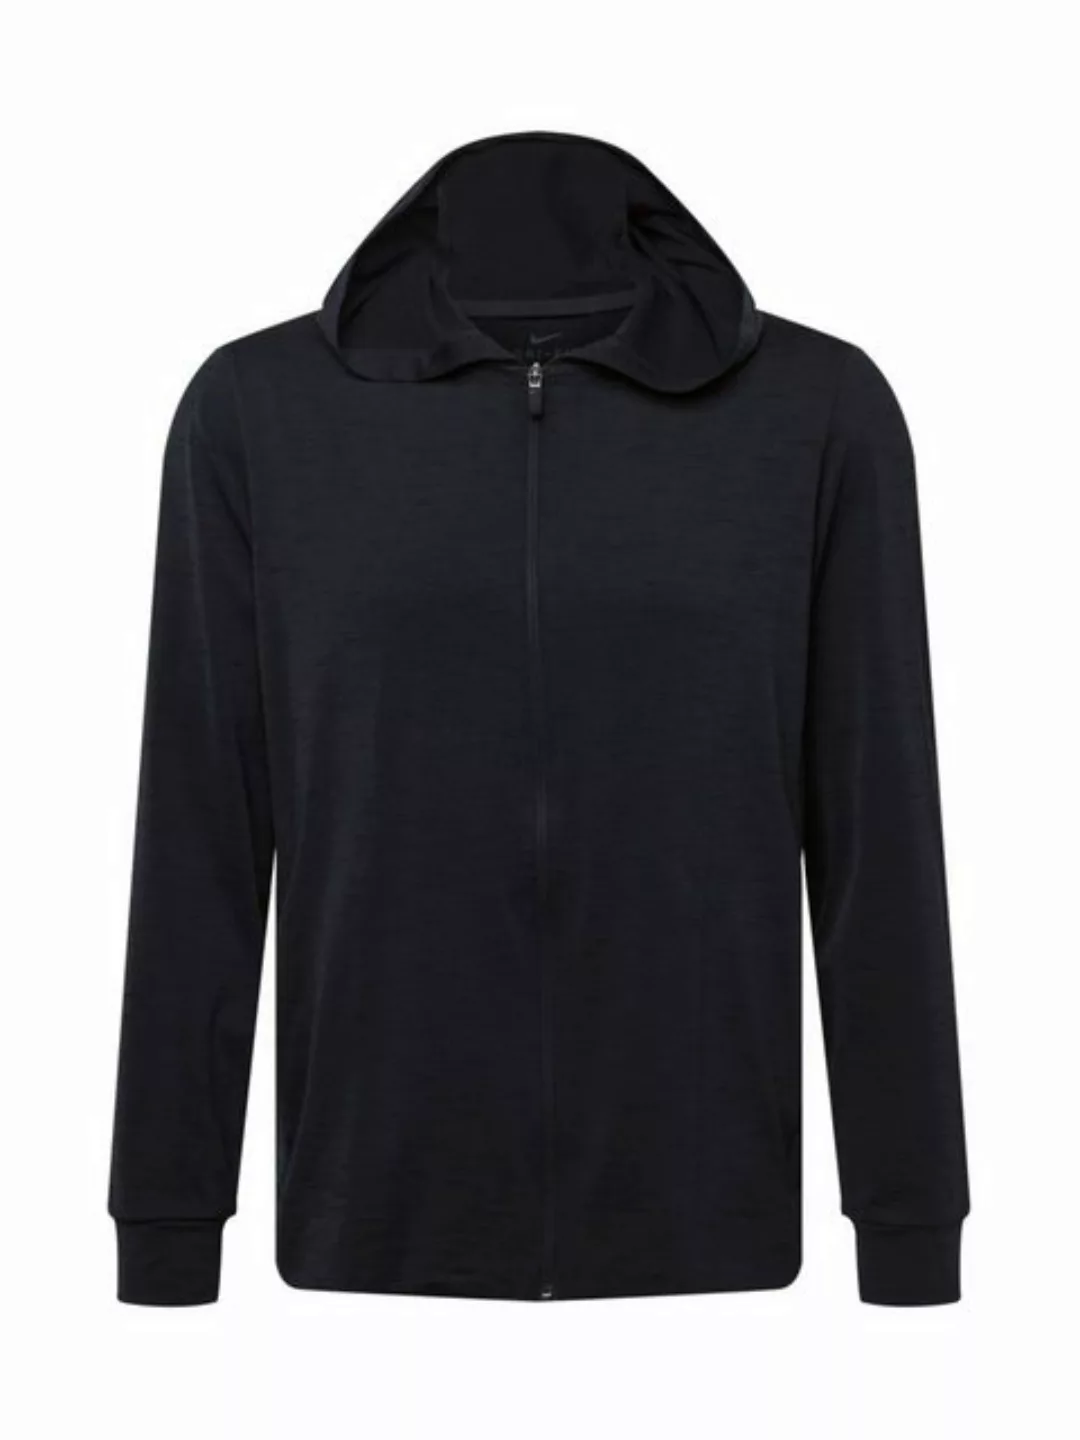 Nike Yoga Dri-fit Sweatshirt Mit Reißverschluss 2XL Off Noir / Black / Gray günstig online kaufen